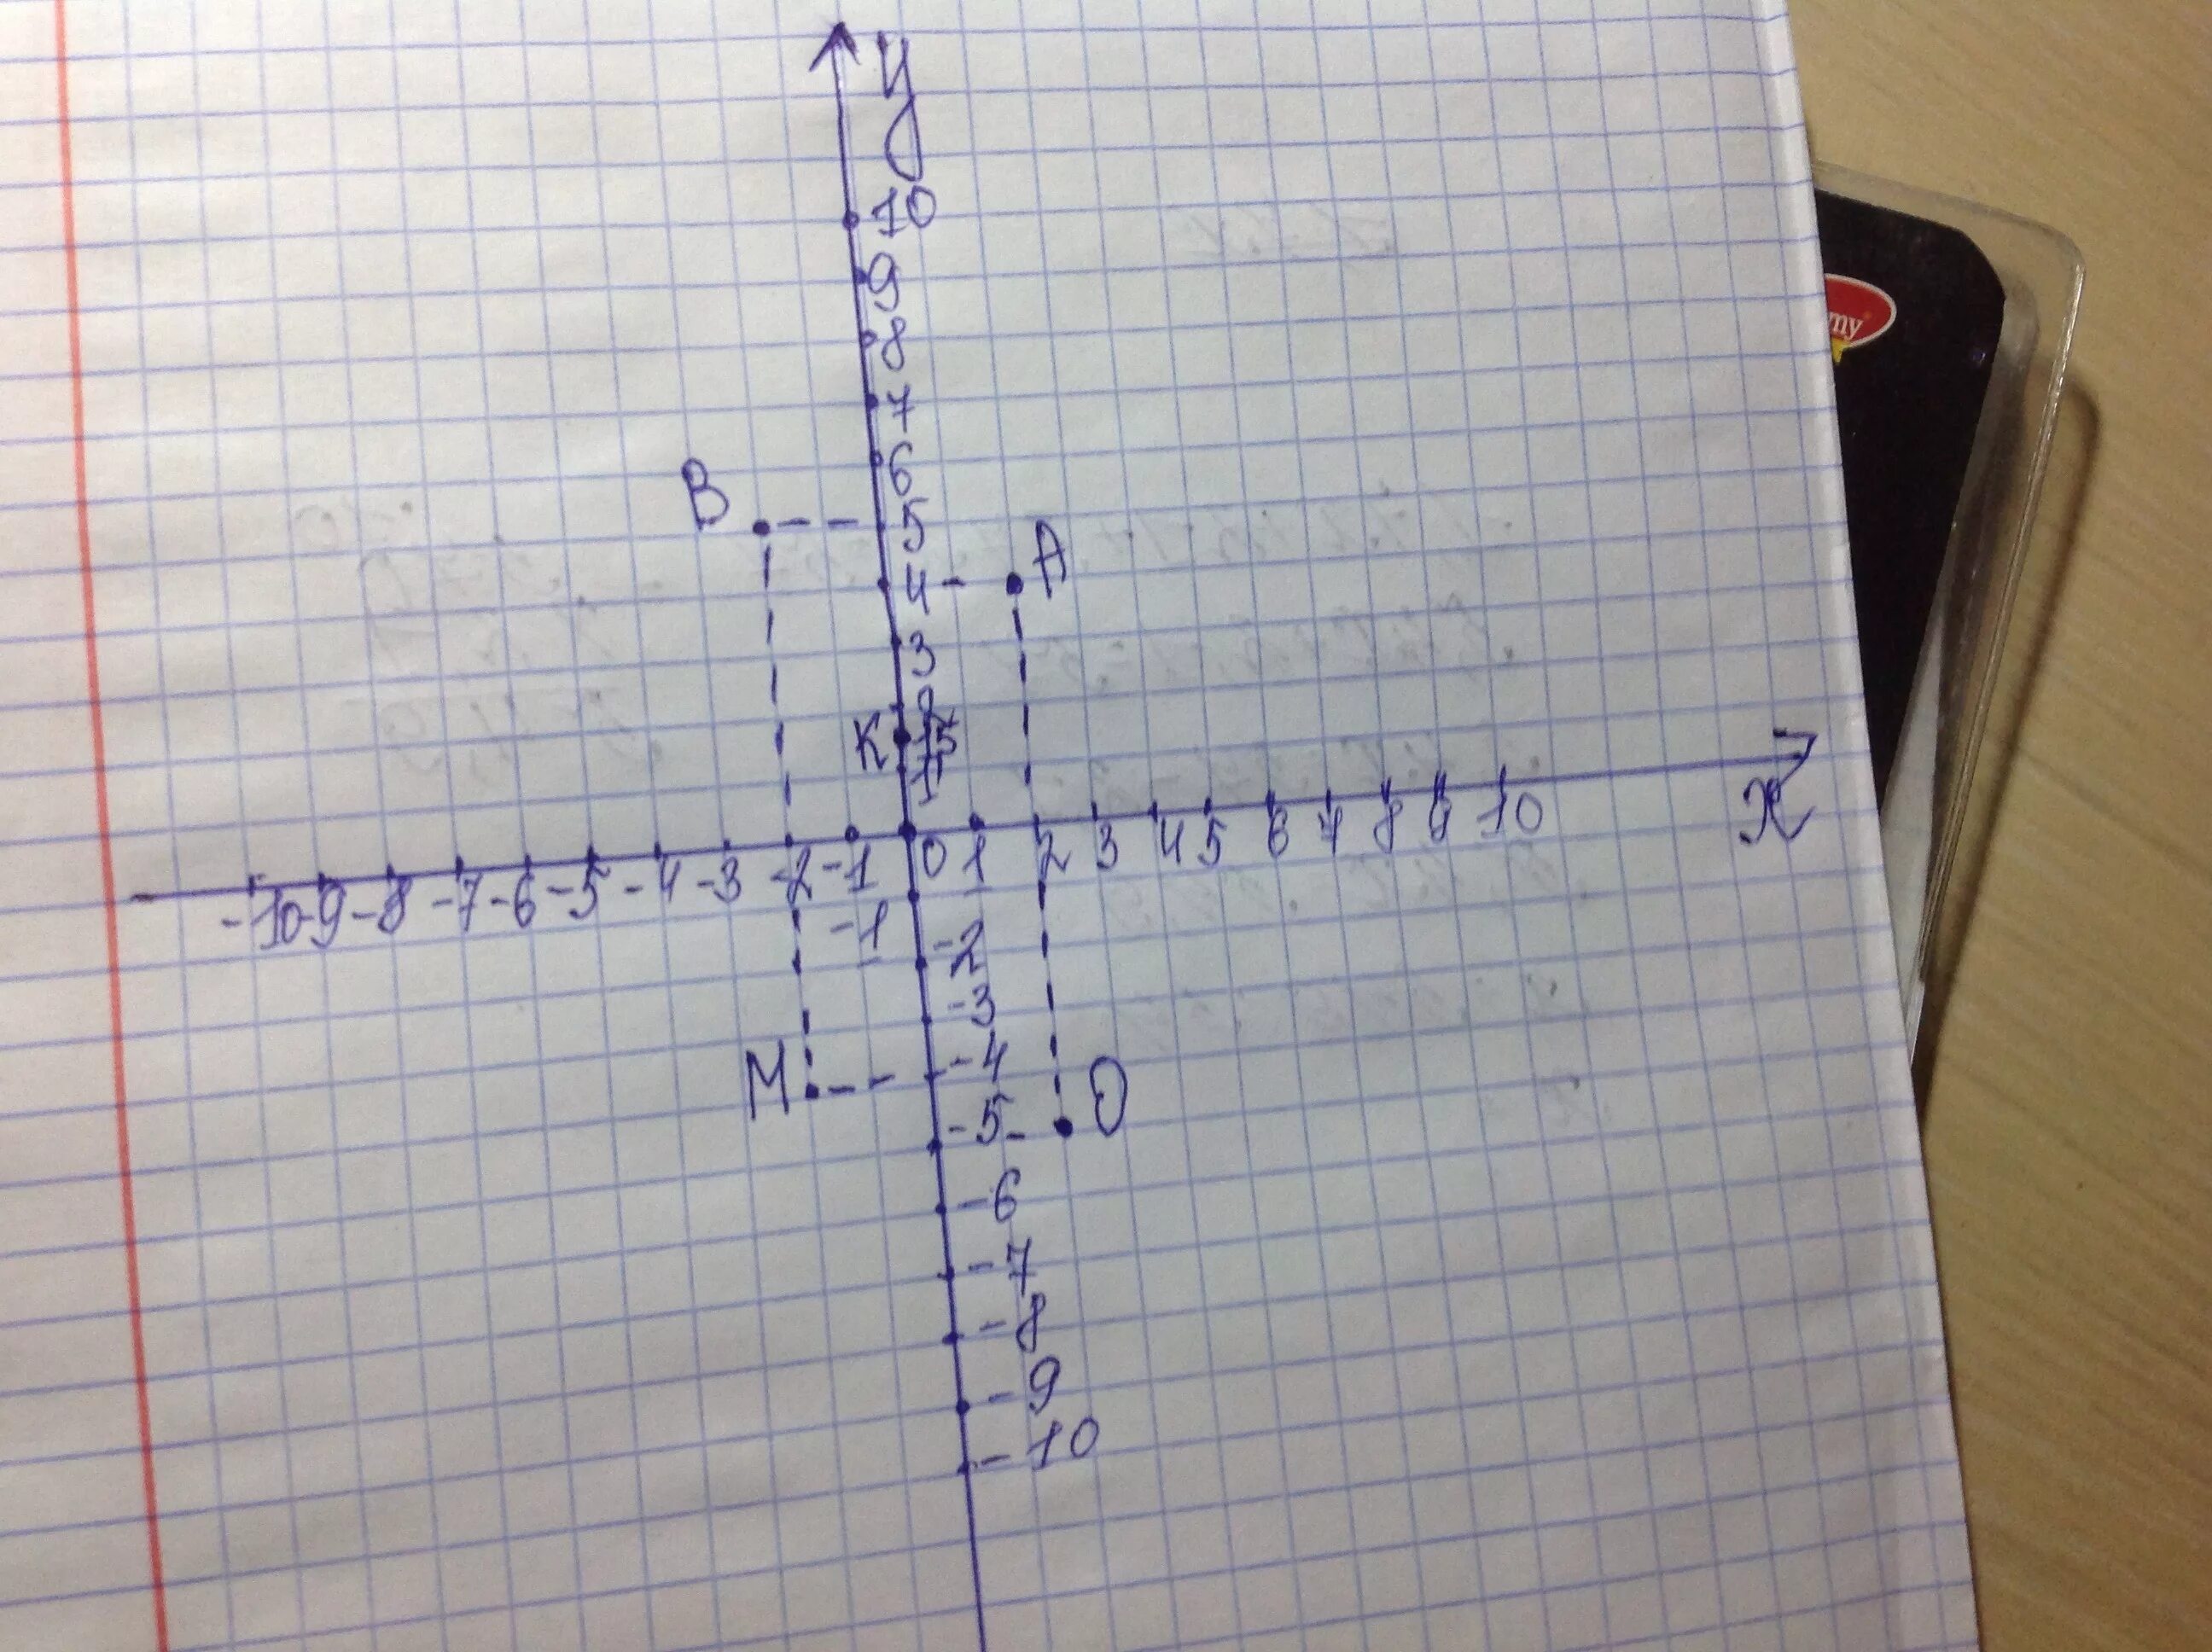 Отметьте на координатной плоскости точки 2 5. Отметьте на плоскости точки а 0;2;2. Изобрази на координатной плоскости точки к -2 4. Изобрази на координатной плоскости точки k(-2;4). Изобразить на координатной плоскости точки к -2 4.